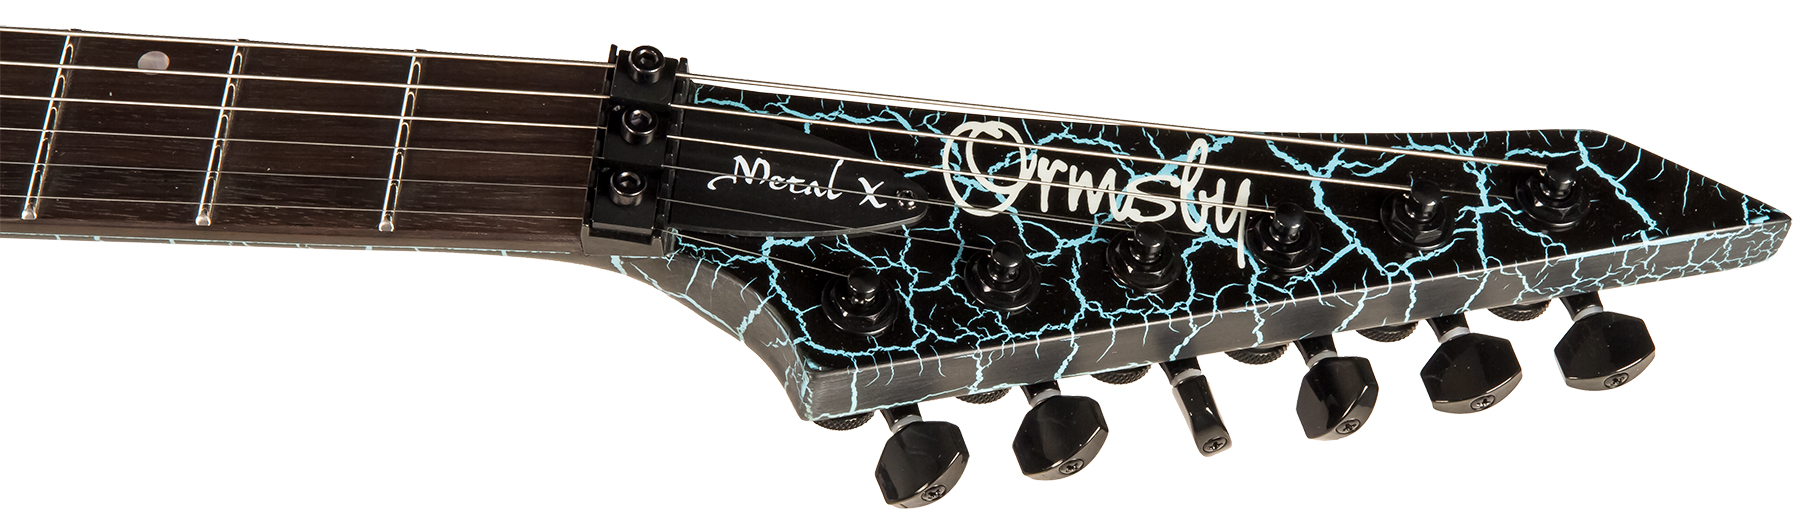 Ormsby Metal X 6 Hh Fr Eb - Azure Crackle - Metalen elektrische gitaar - Variation 4